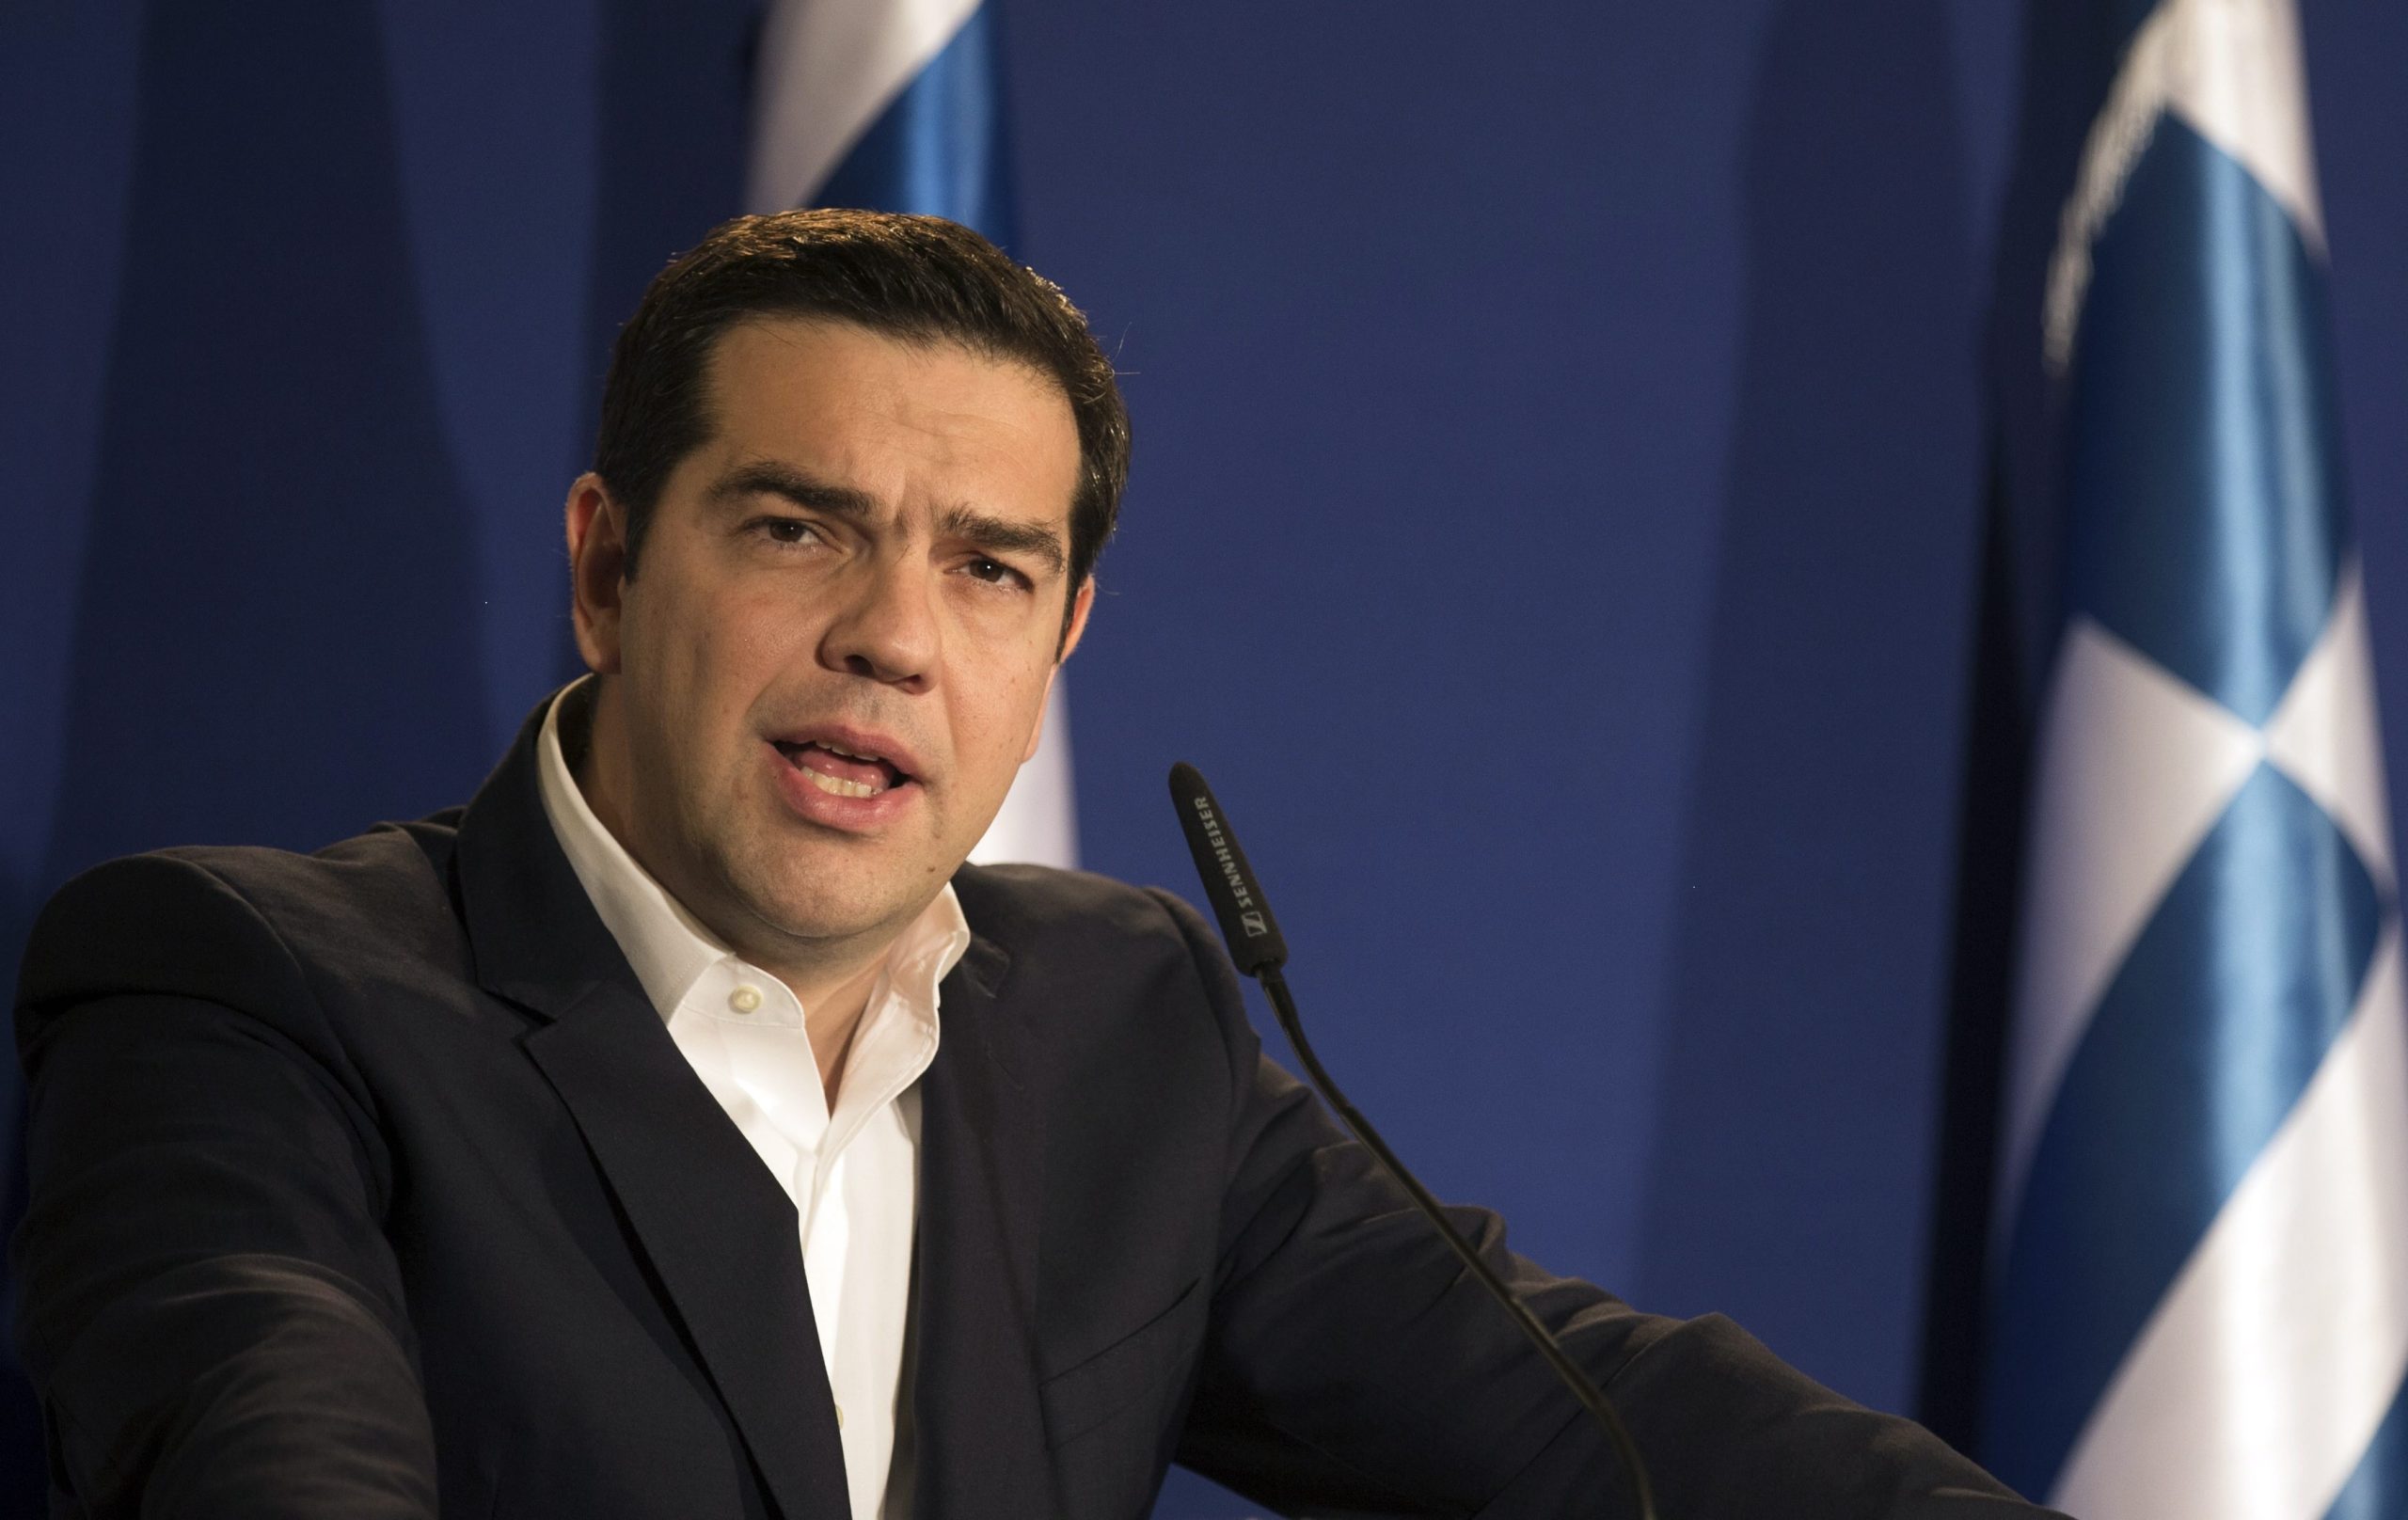 Το «colpo grosso» που θα επιχειρήσει ο Α.Τσίπρας για να γλιτώσει τα εξοντωτικά μέτρα του 2019